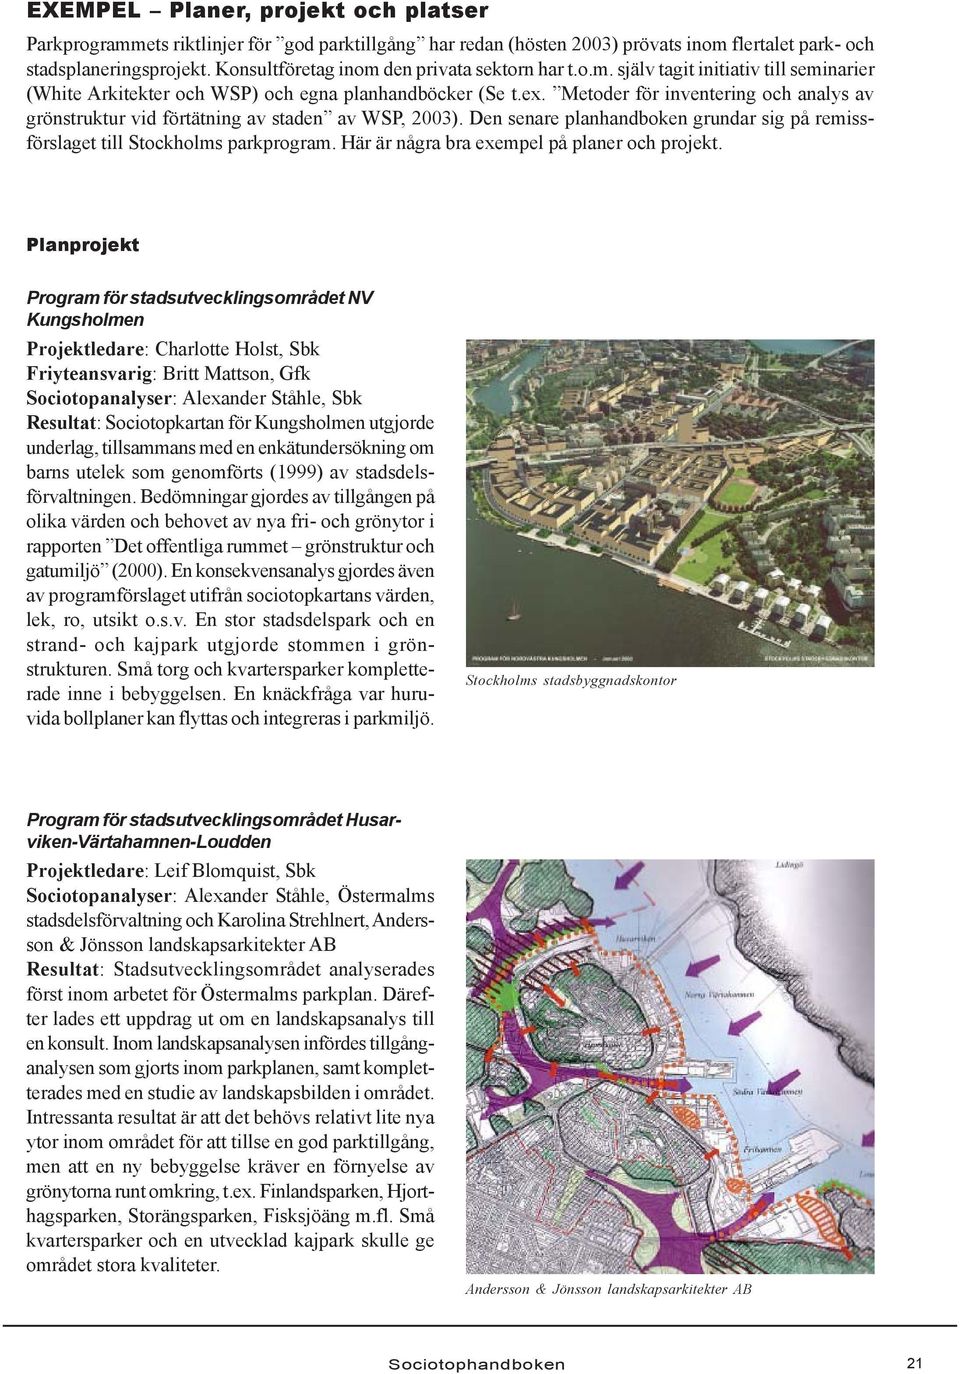 Metoder för inventering och analys av grönstruktur vid förtätning av staden av WSP, 2003). Den senare planhandboken grundar sig på remissförslaget till Stockholms parkprogram.